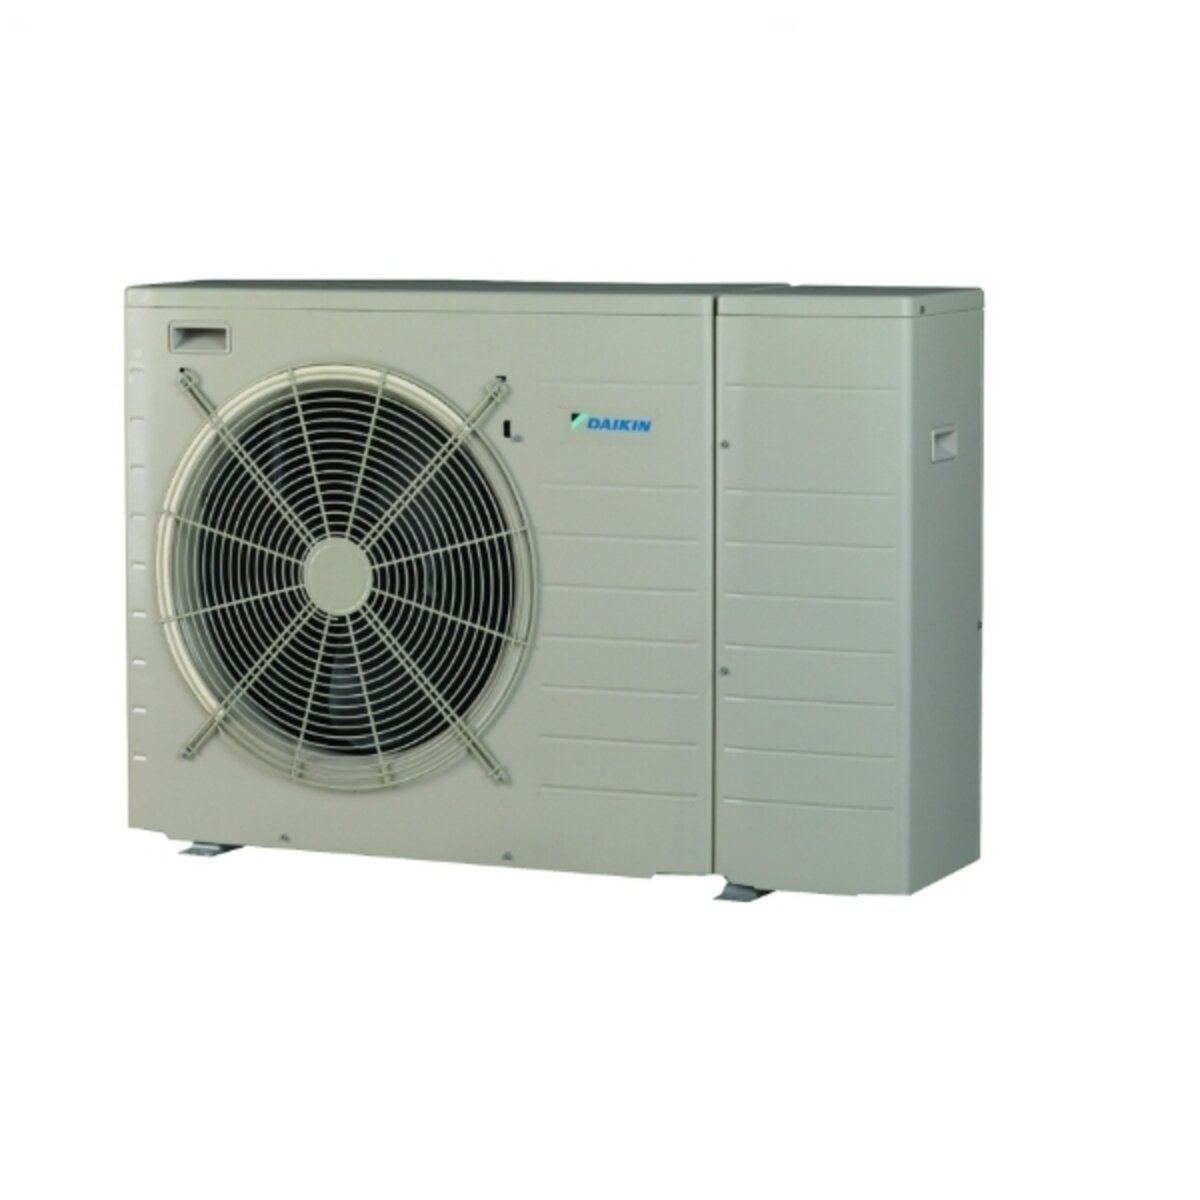 Daikin air/water heat pump 4 kW single-phase power supply